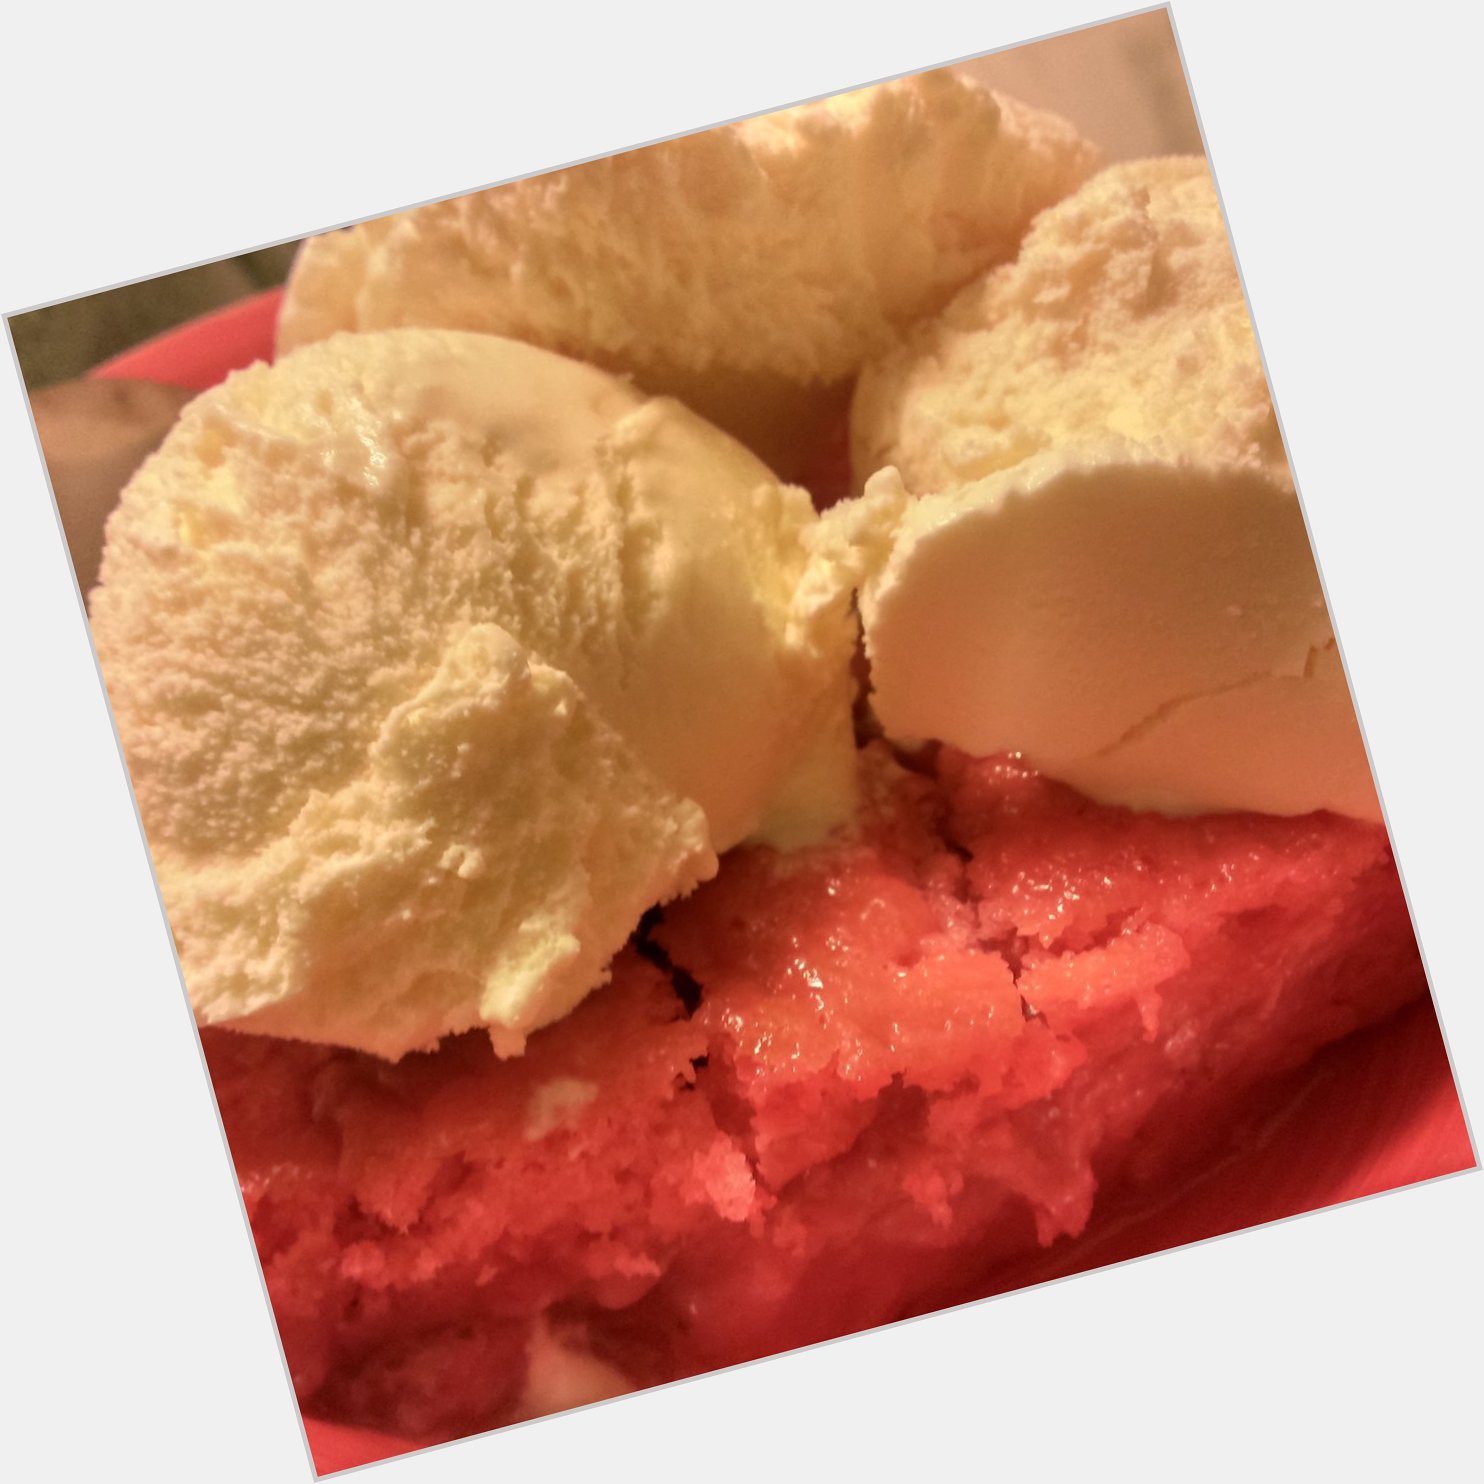 Strawberry Cobbler & Vanilla Ice Cream! Happy Birthday To Me! 